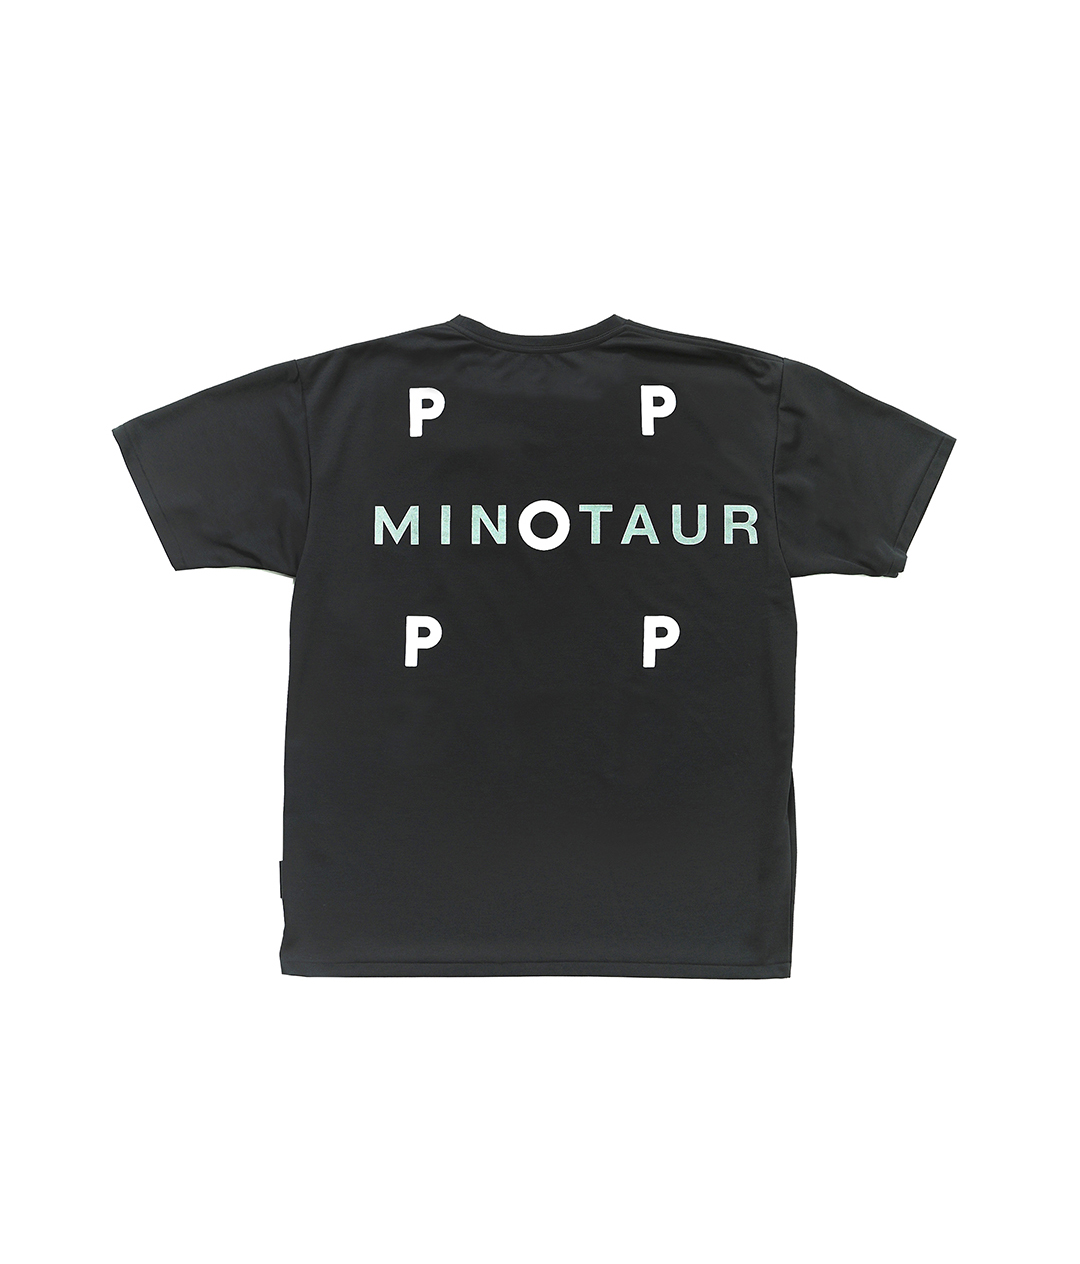 【超希少・再販なし】MINOTAUR INST. × 010 コラボ Tシャツ